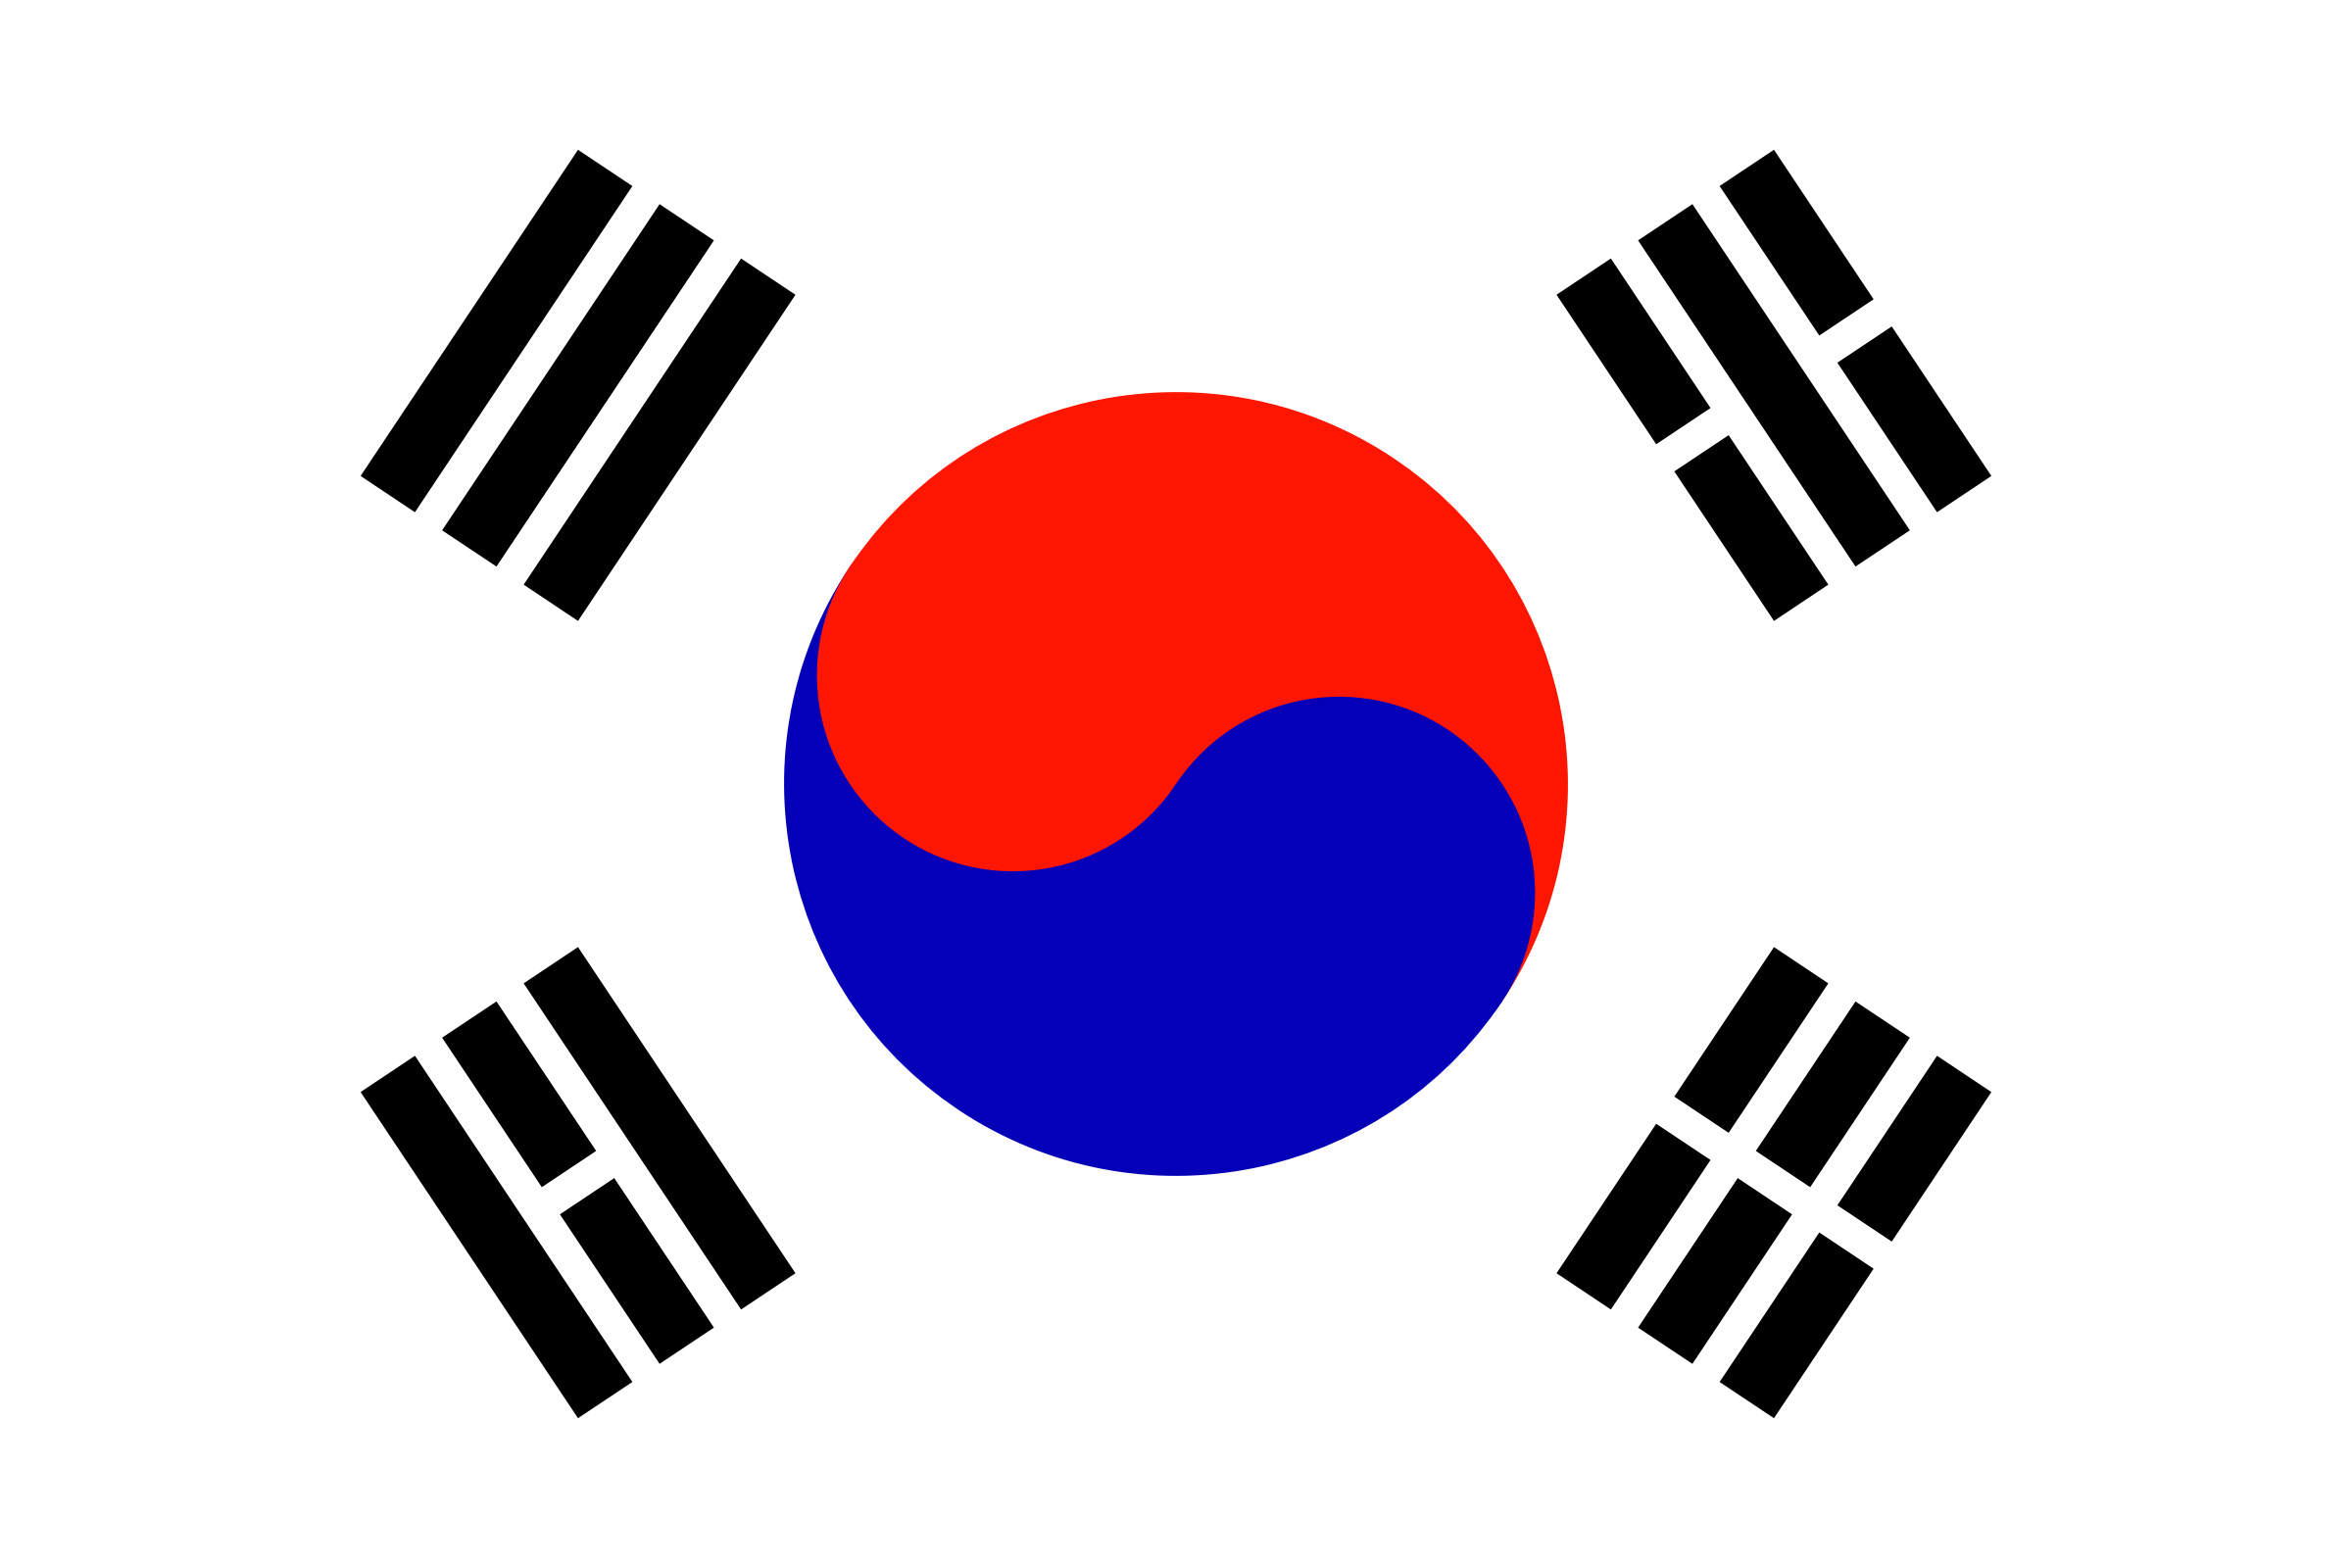 Flag of South Korea 